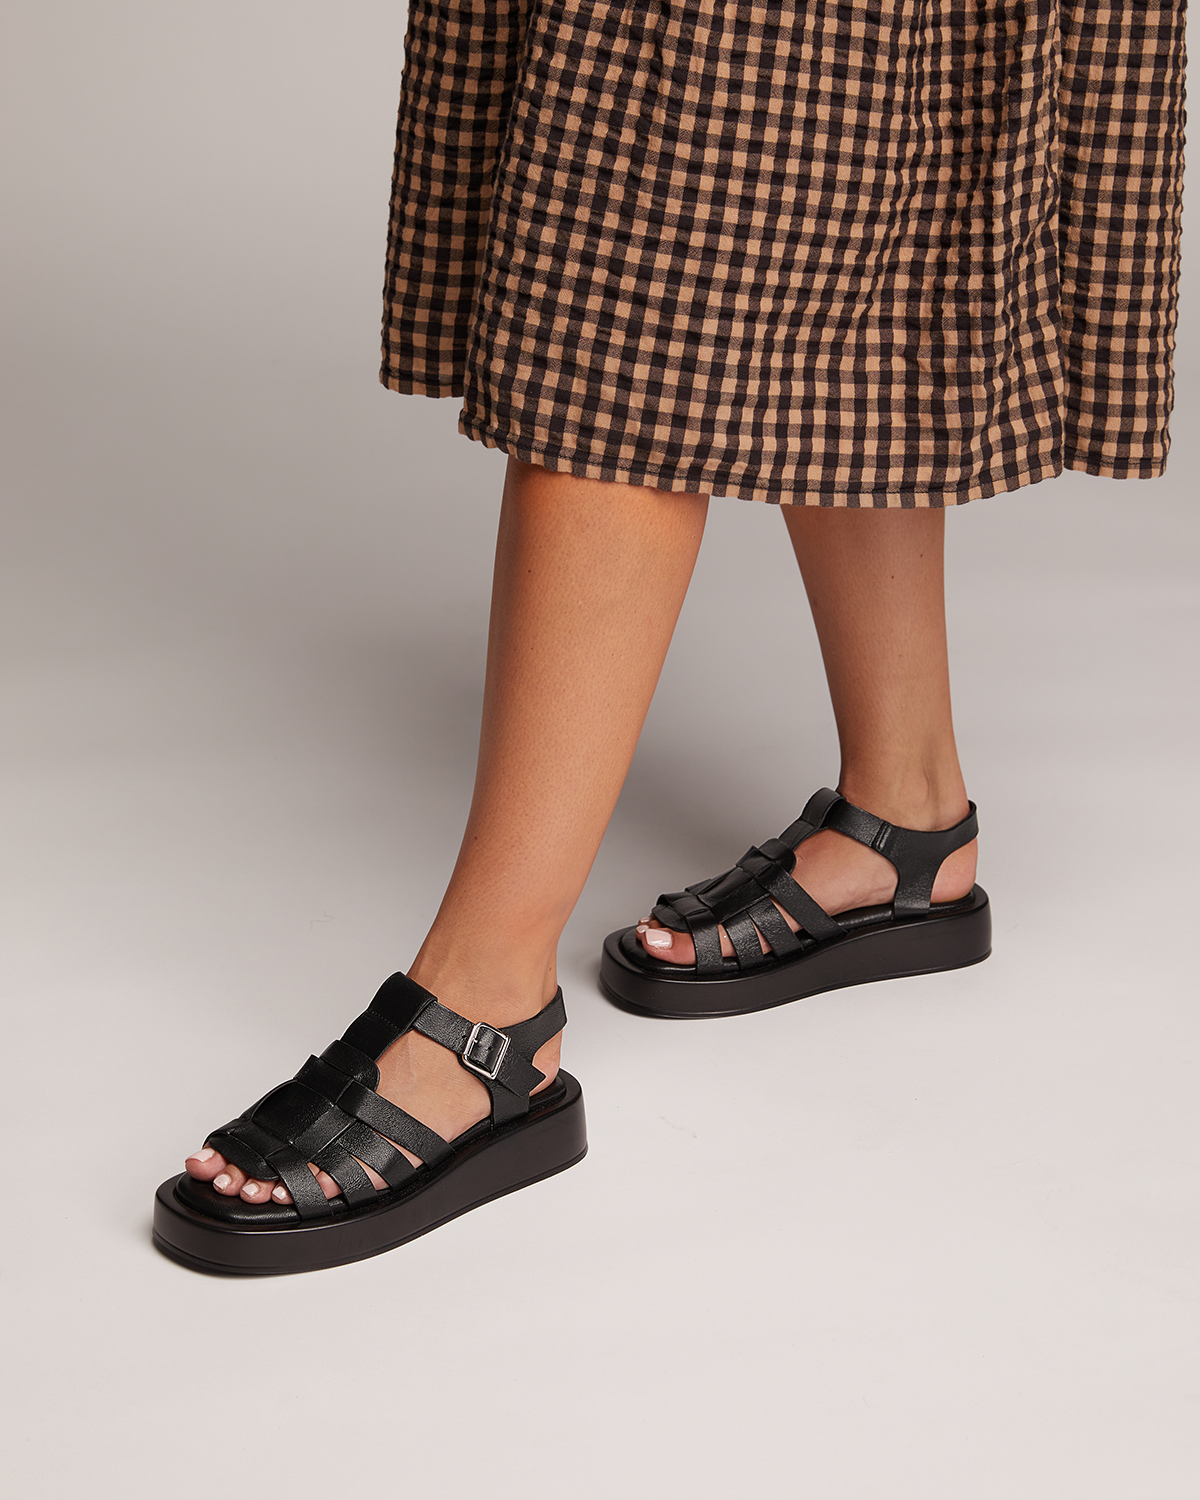 Just Because Shoes Sefora Black | Leather Flatform | Slides | Sandals